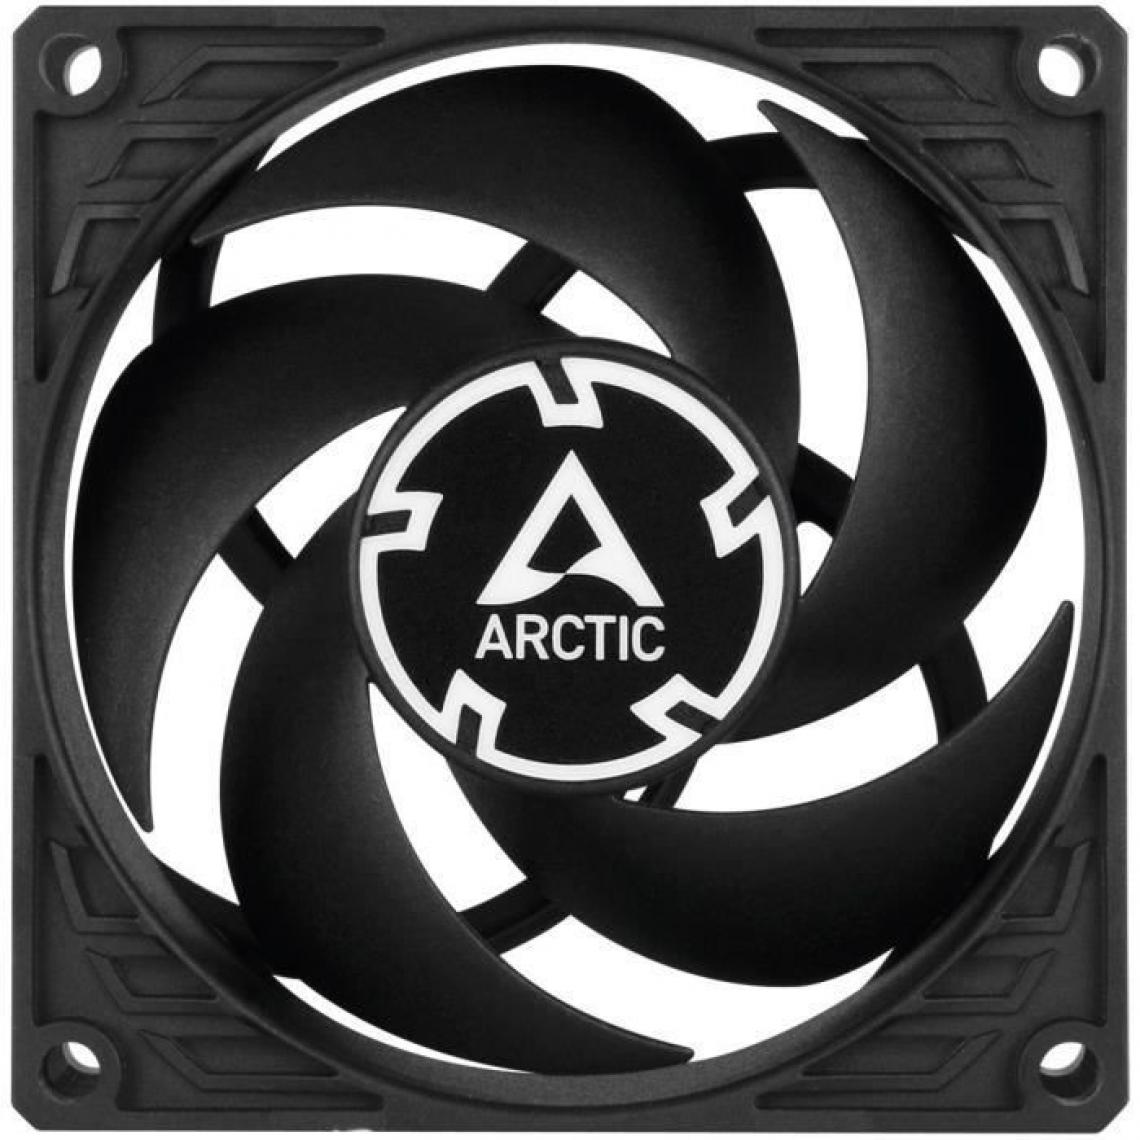 Arctic - Ventilateur boîtier - ARCTIC - ACFAN00147A - P8 - 80mm a faible bruit - Kit watercooling